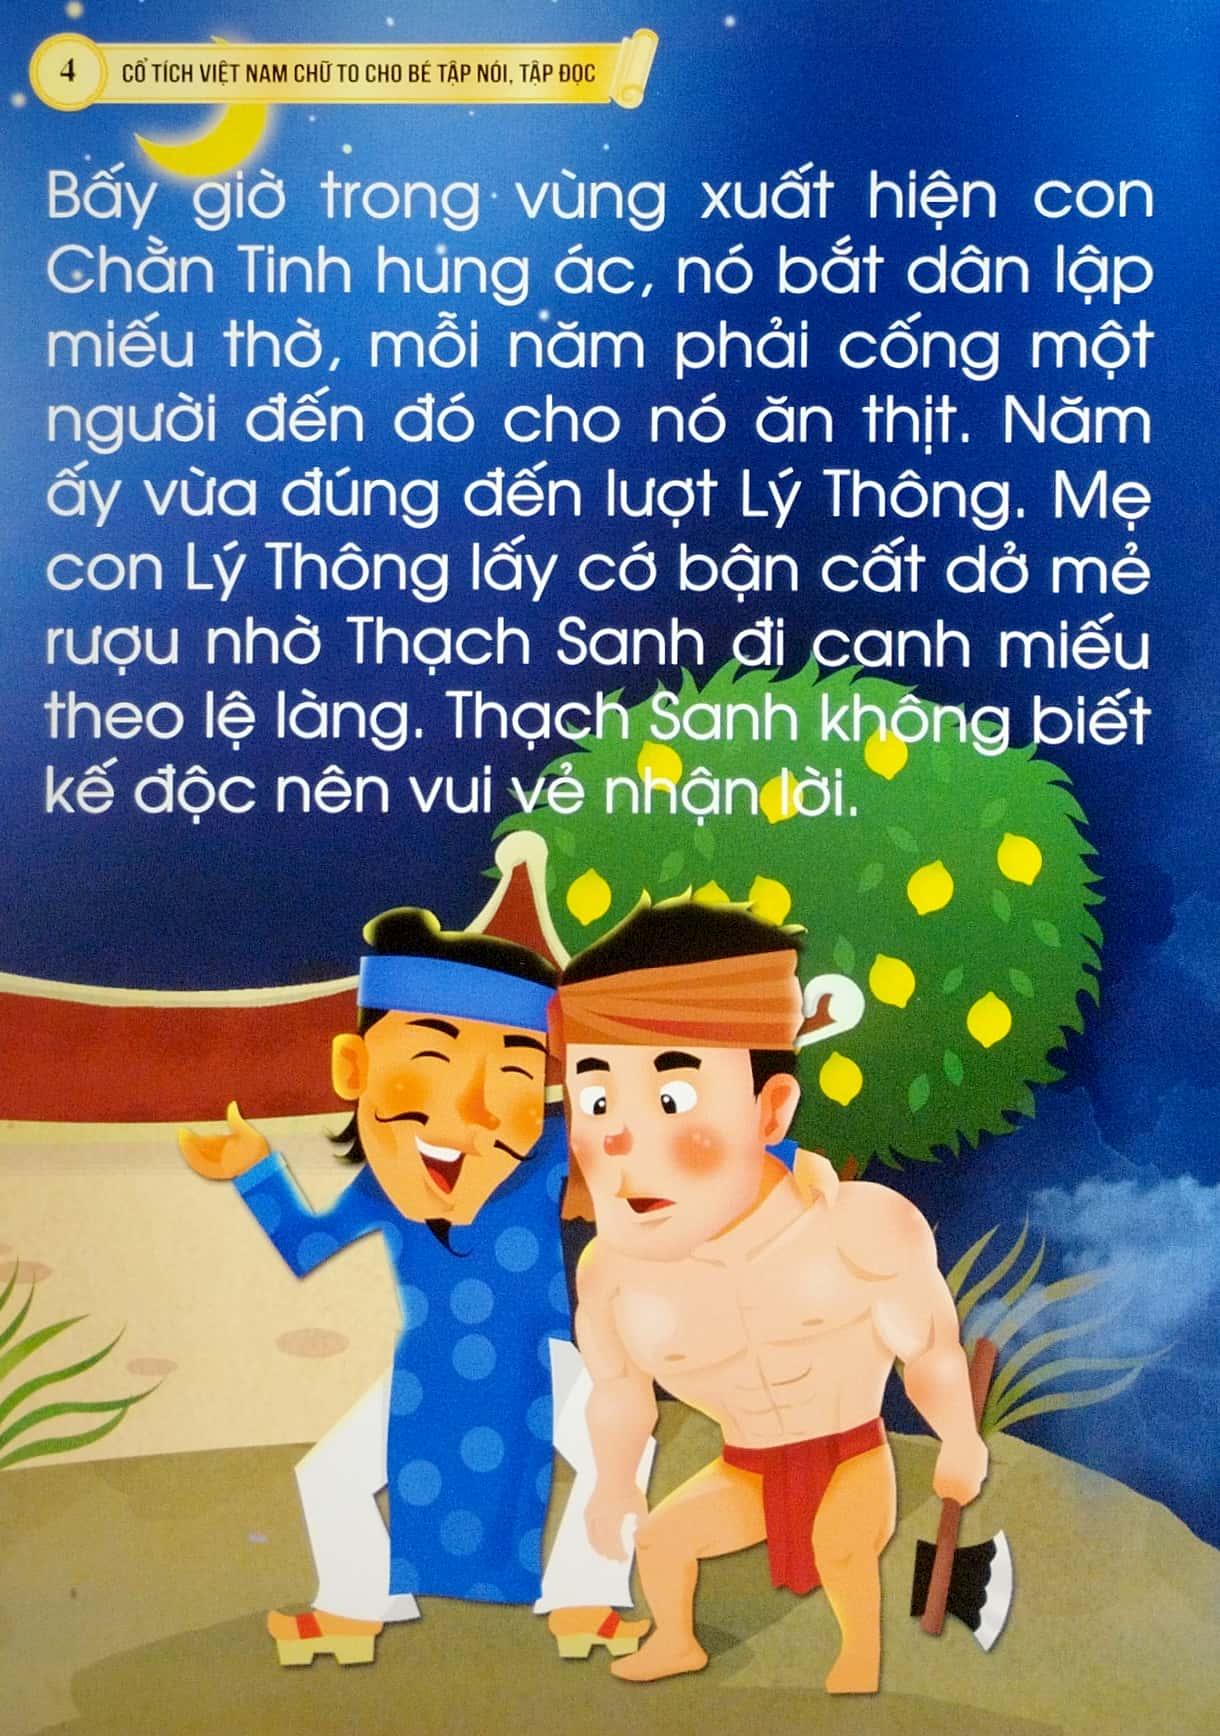 Cổ Tích Việt Nam Chữ To Cho Bé Tập Nói, Tập Đọc - Thạch Sanh